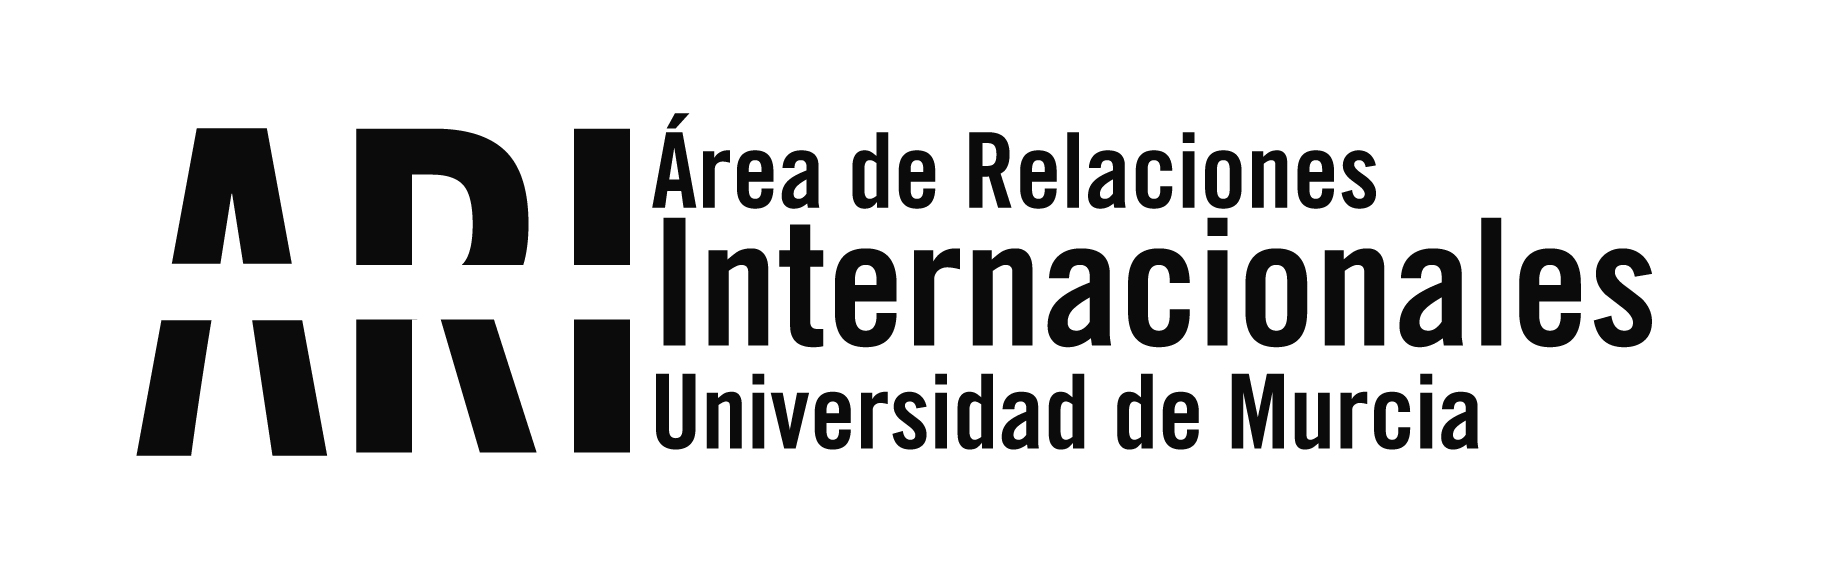 La UMU asiste al encuentro CRUE entre universidades Españolas y Chinas en Madrid - Área de Relaciones Internacionales